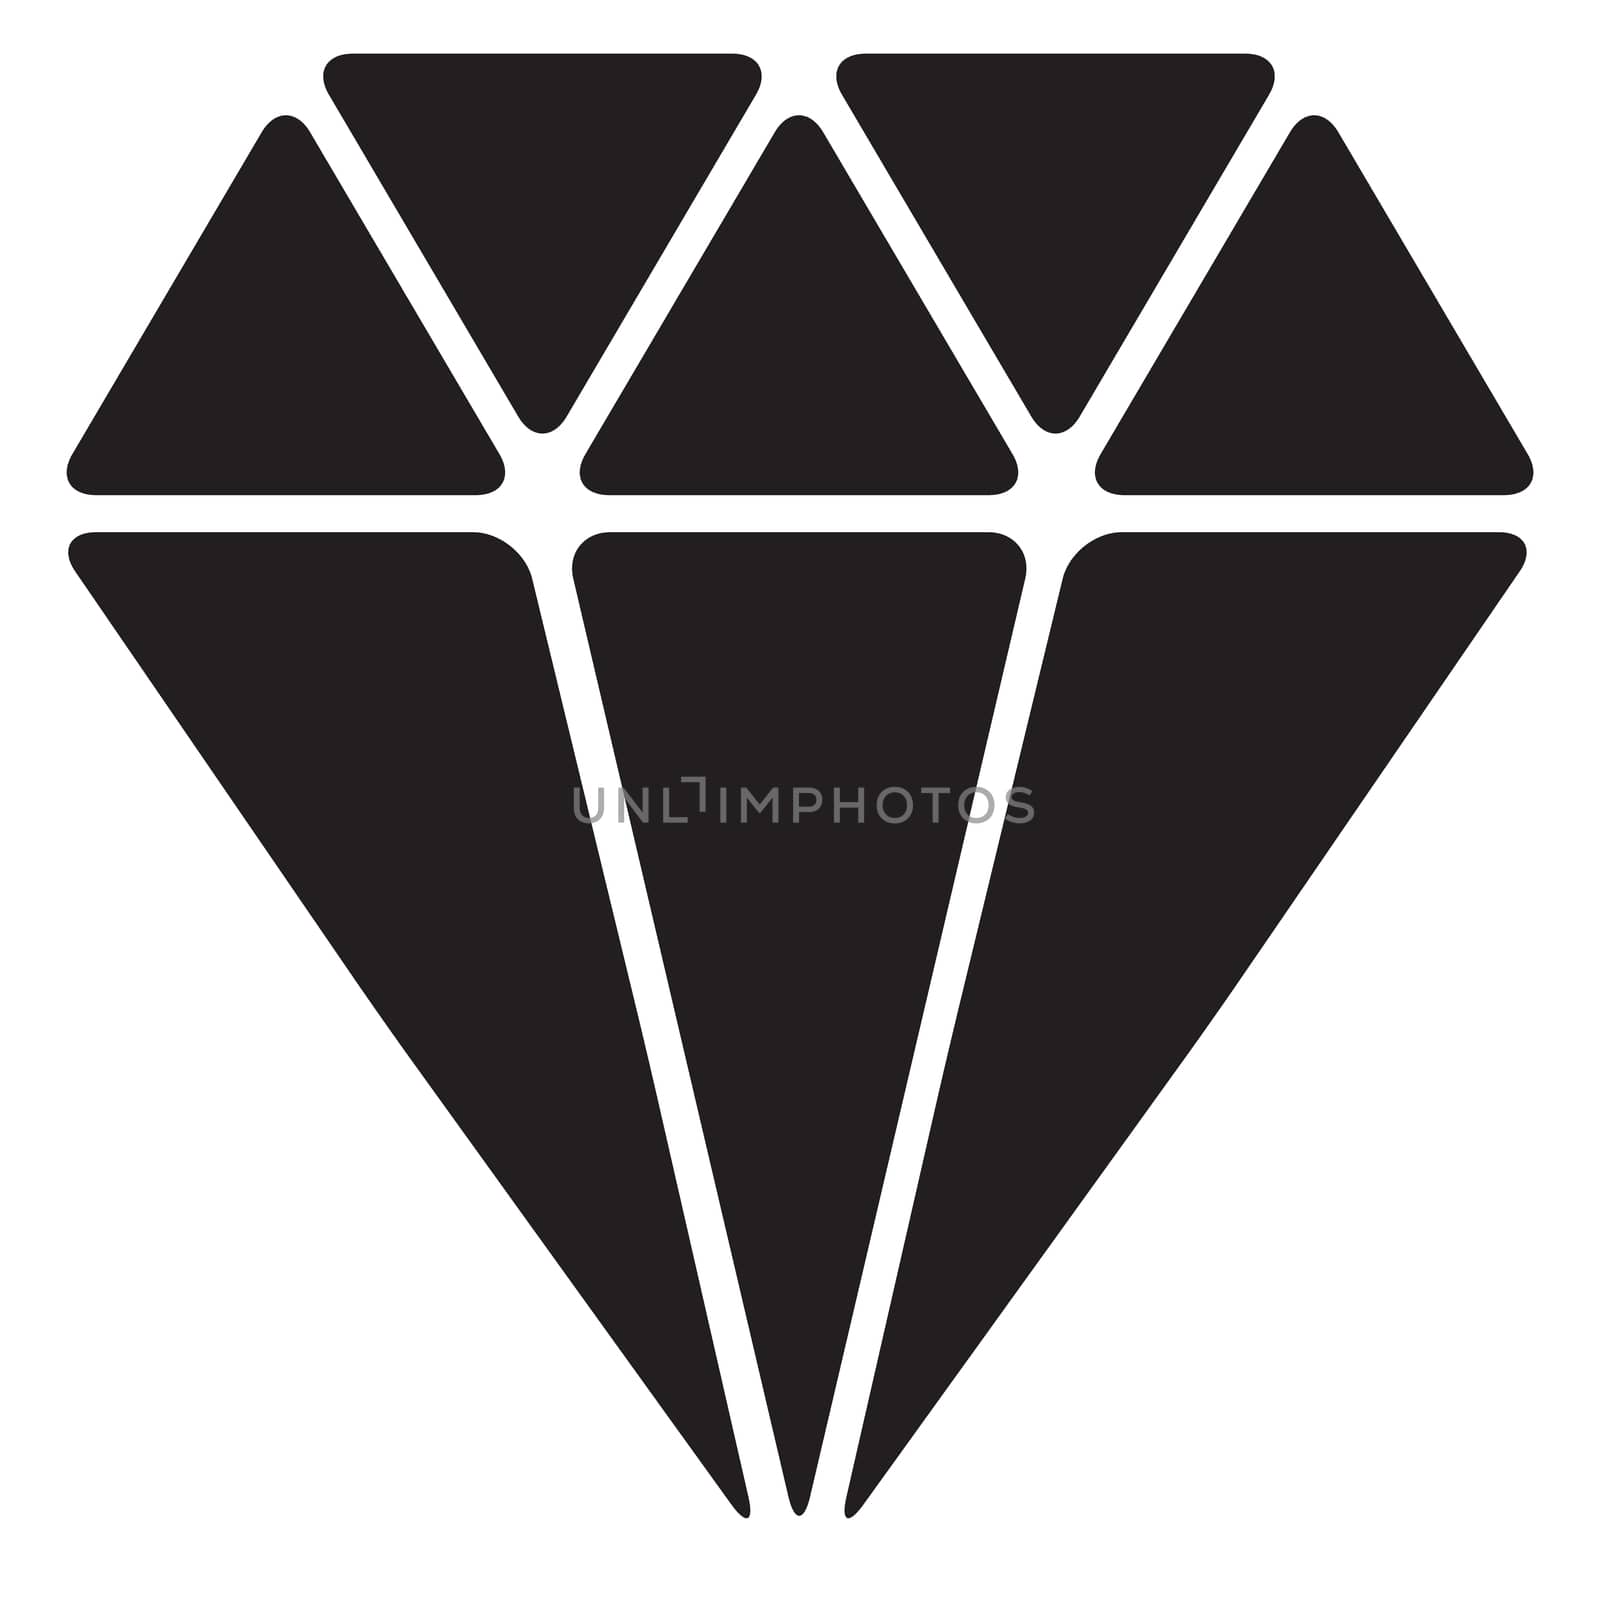 diamond icon, diamond icon on white background. flat style. diamond icon for your web site design, logo, app, UI. 